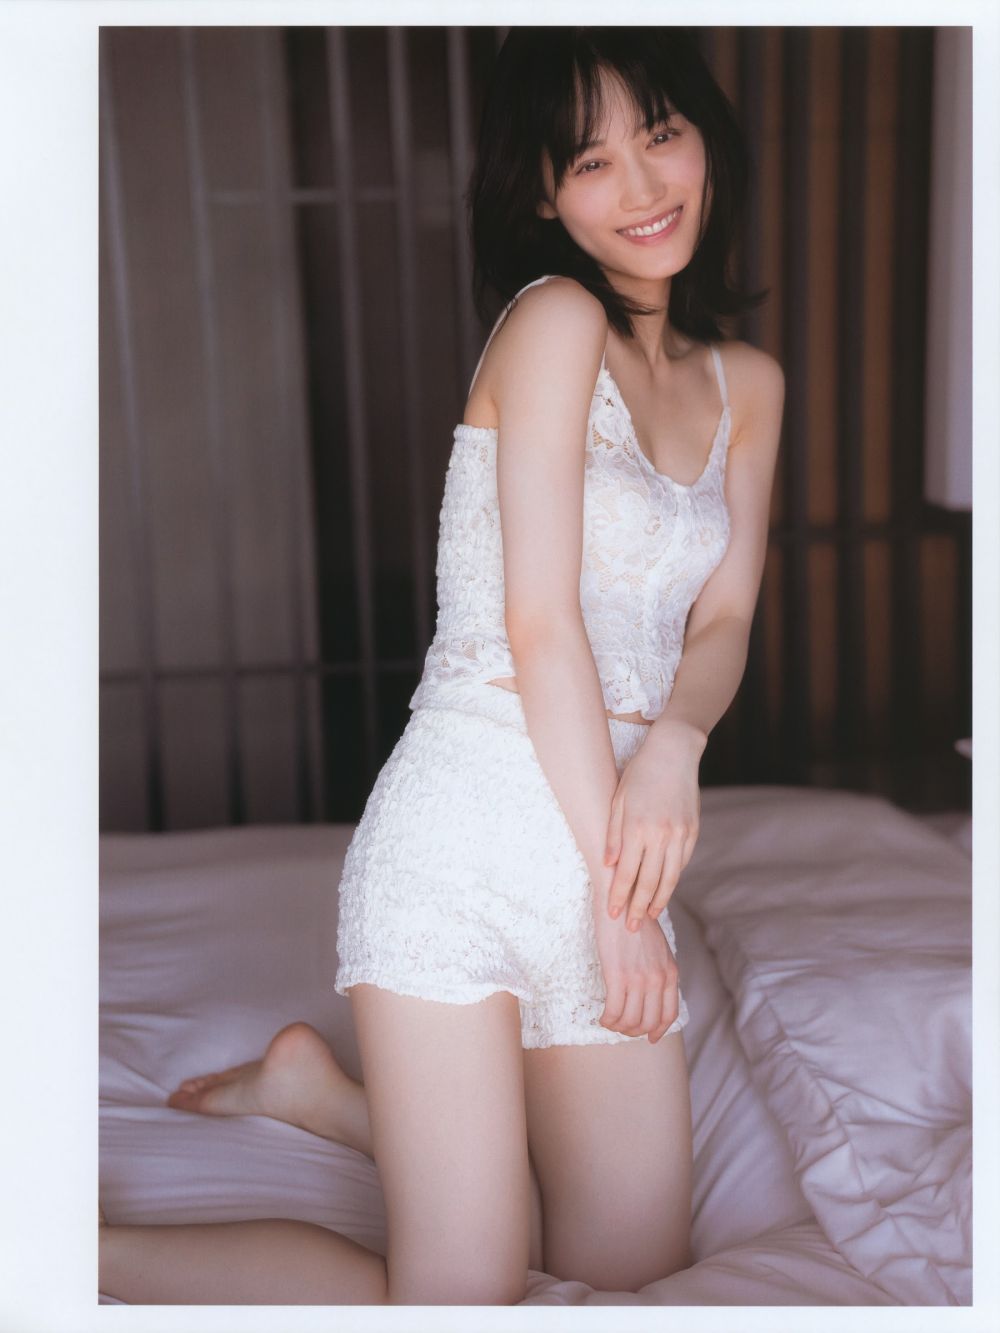 Mizuki Yamashita Sexy and Hottest Photos , Latest Pics